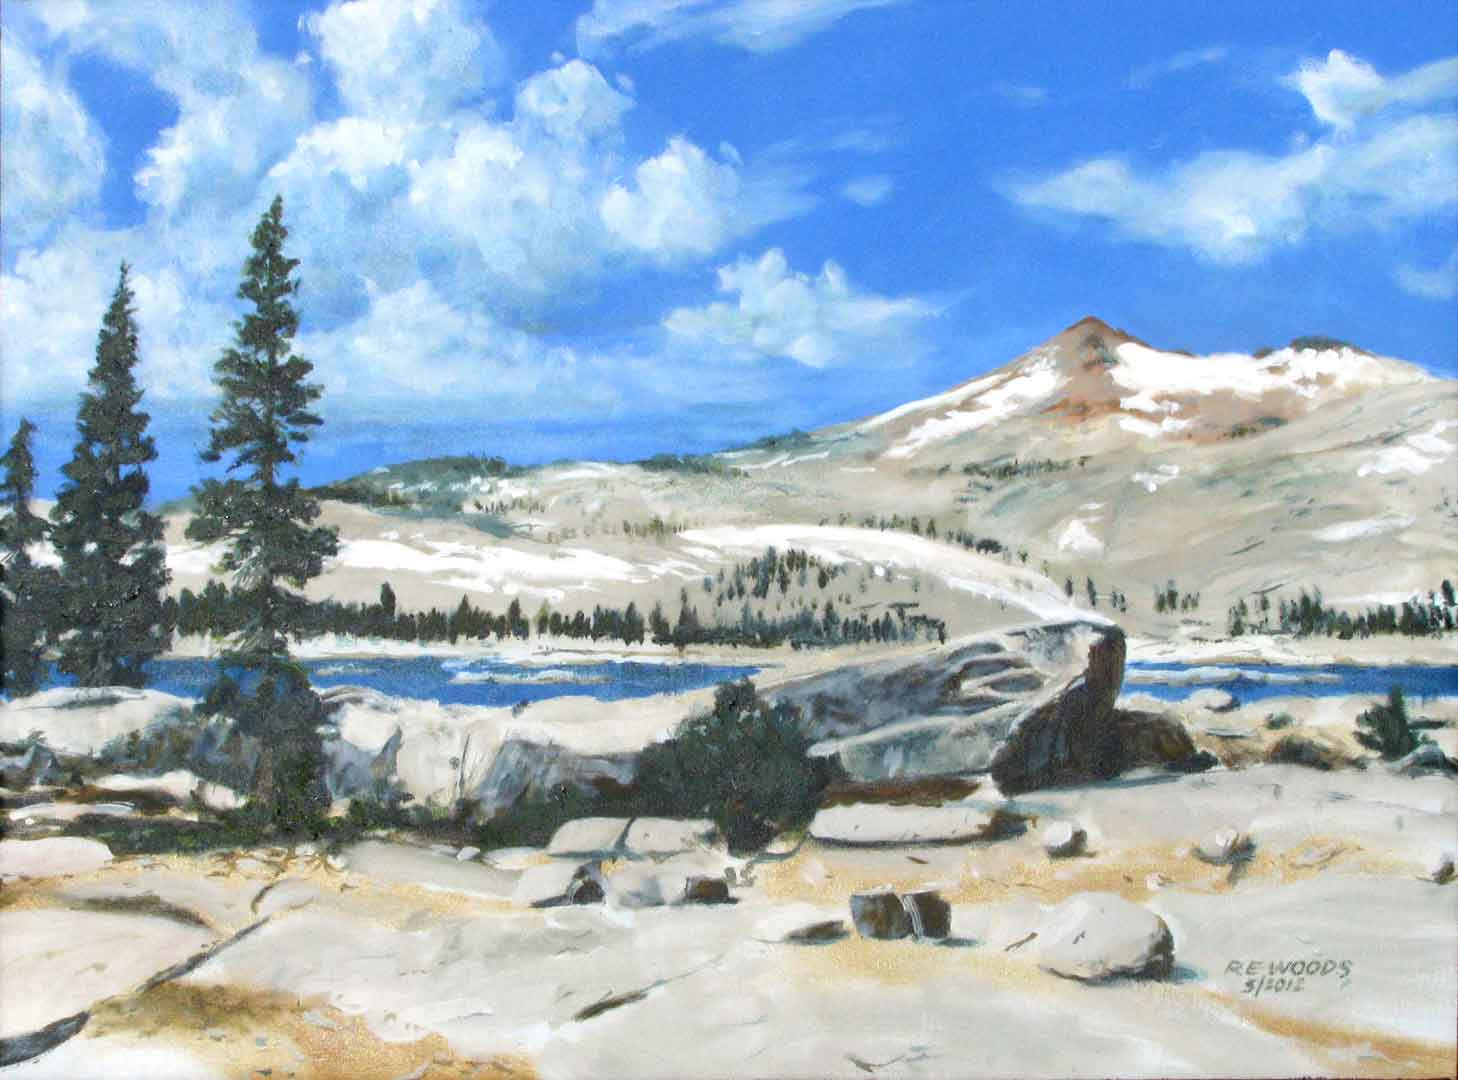 Desolation Valley Wilderness, Oil on canvas, 28 x 21